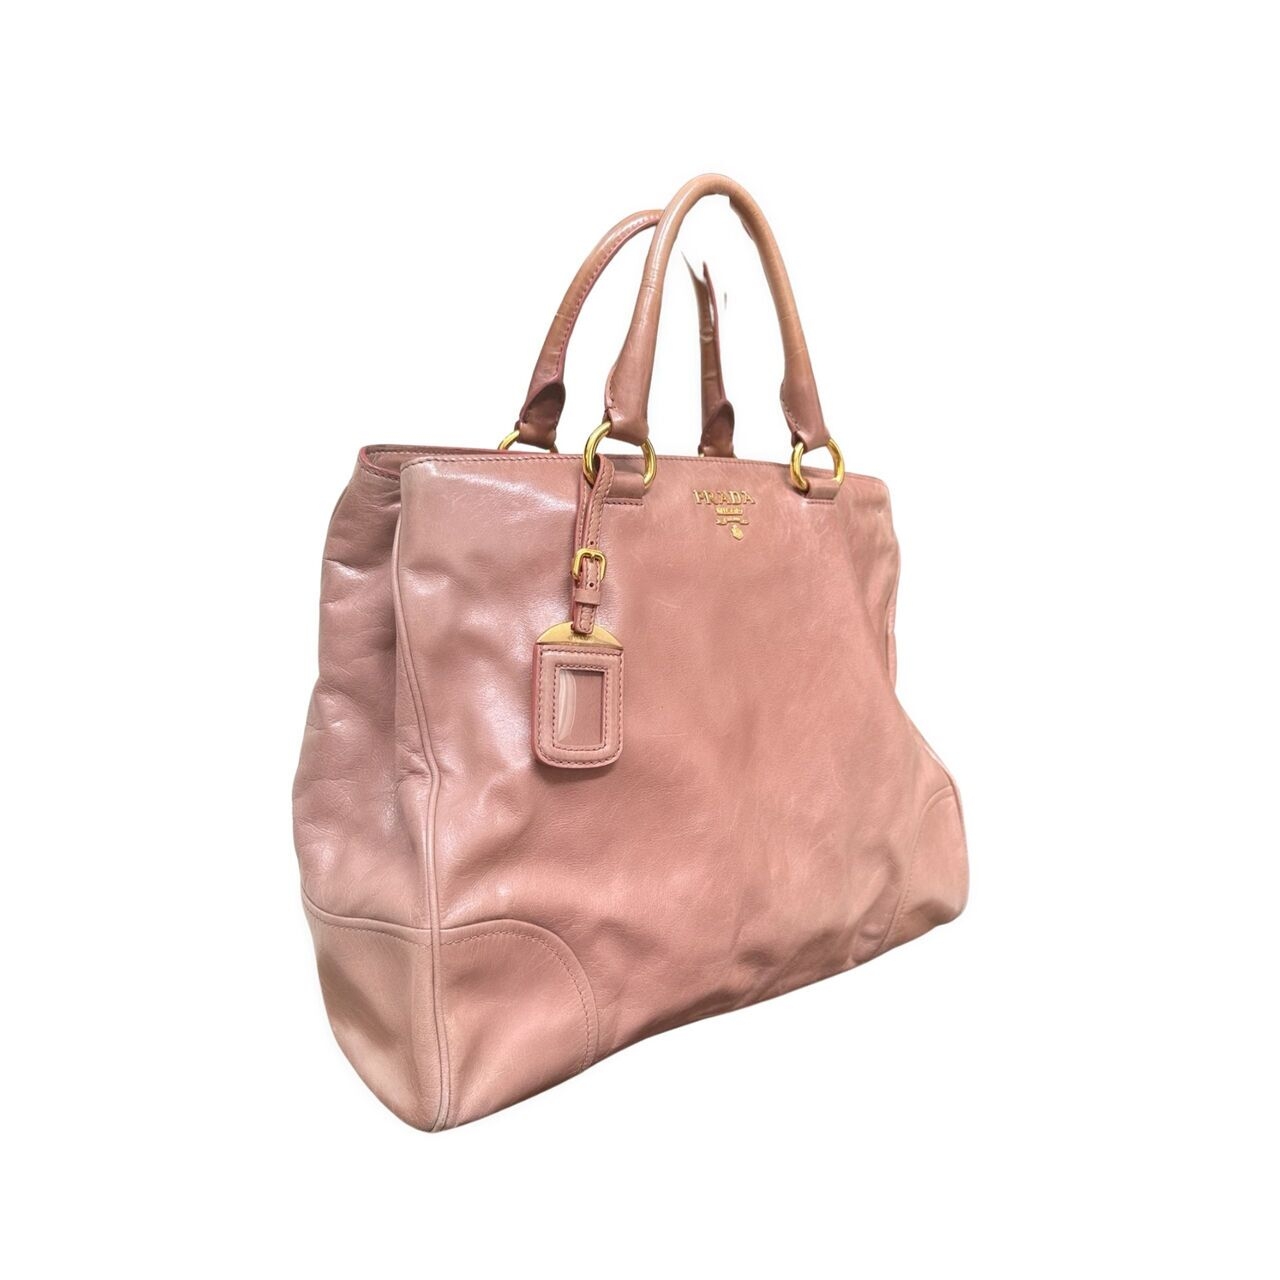 Prada Pink Tote Bag